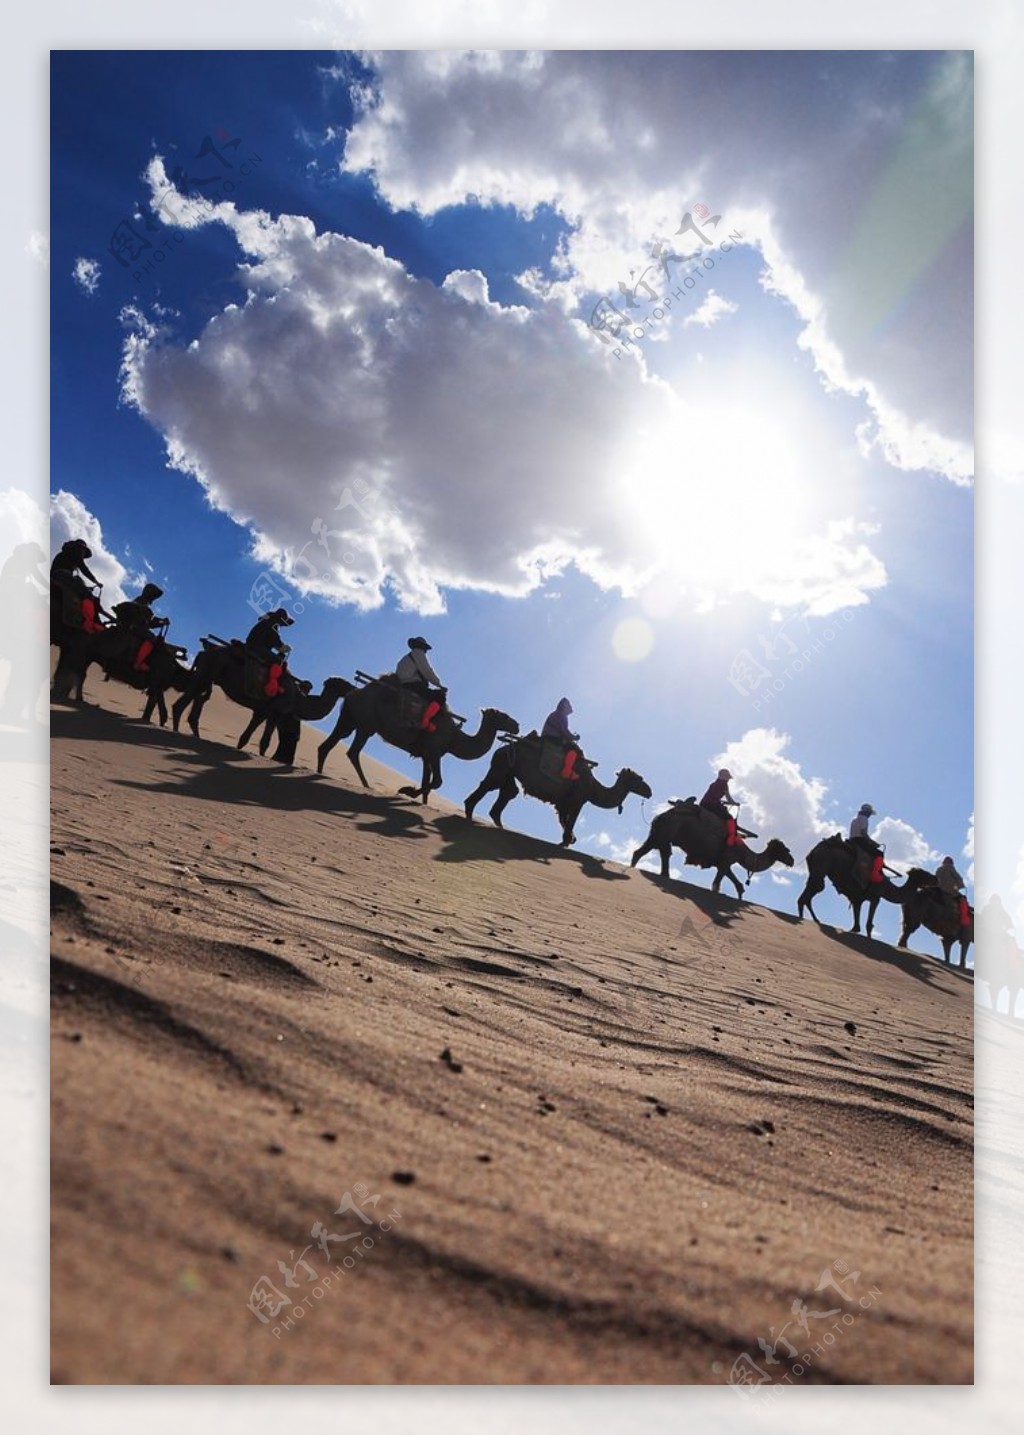 沙漠里行走的骆驼队伍图片